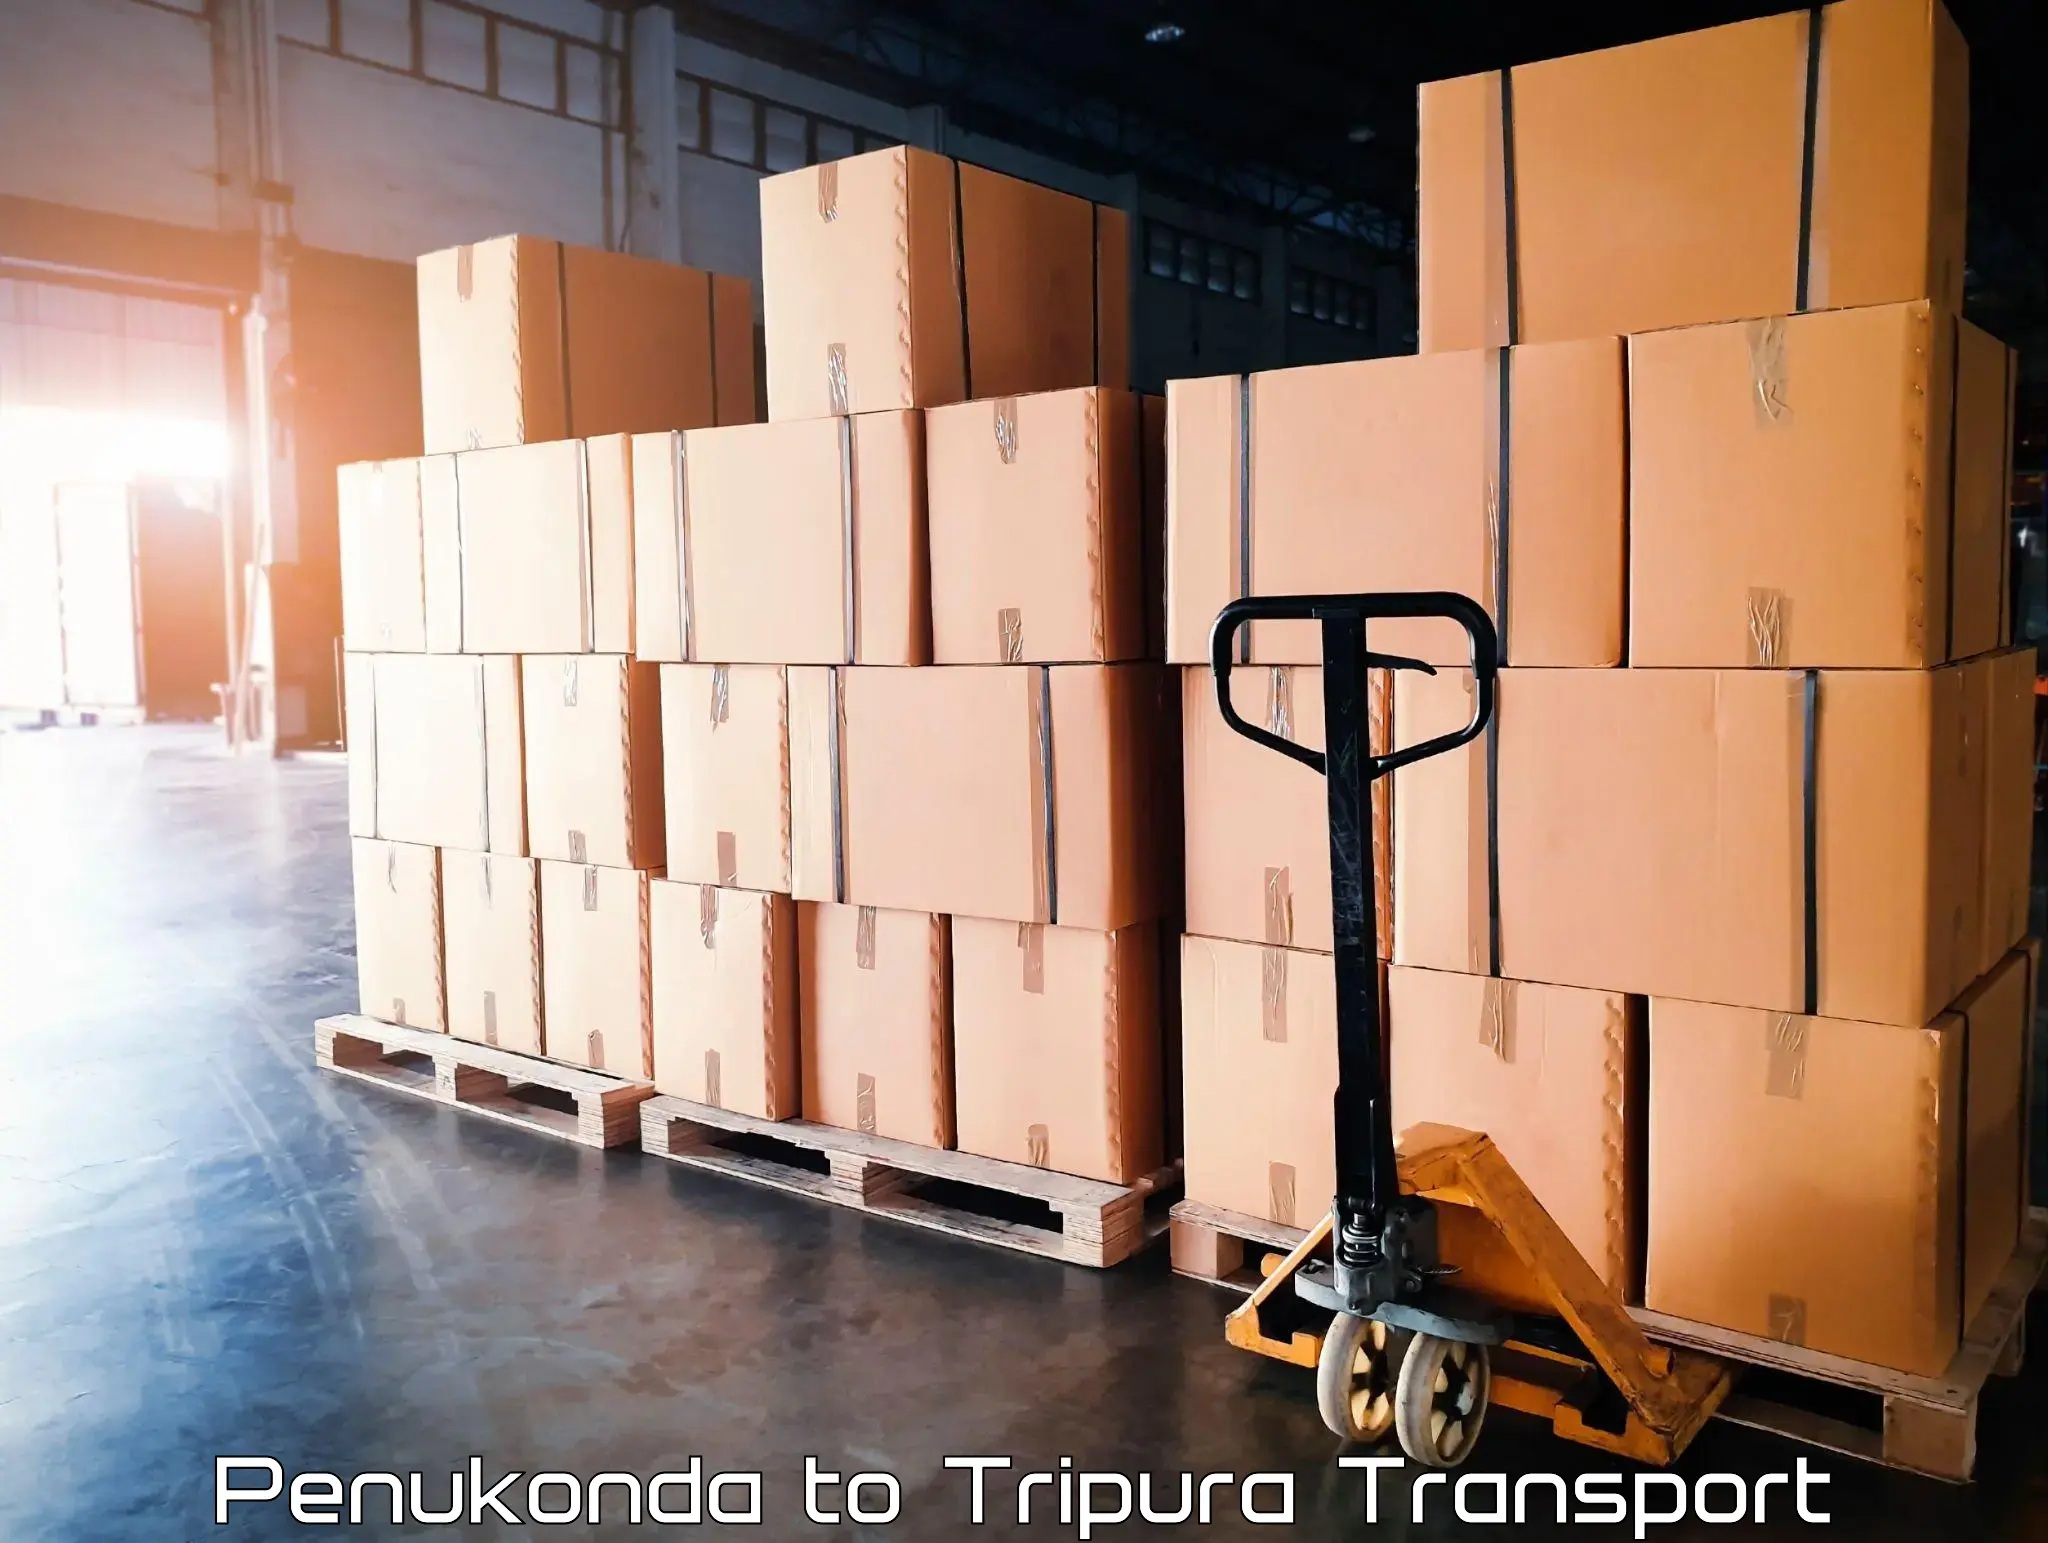 India truck logistics services Penukonda to Udaipur Tripura